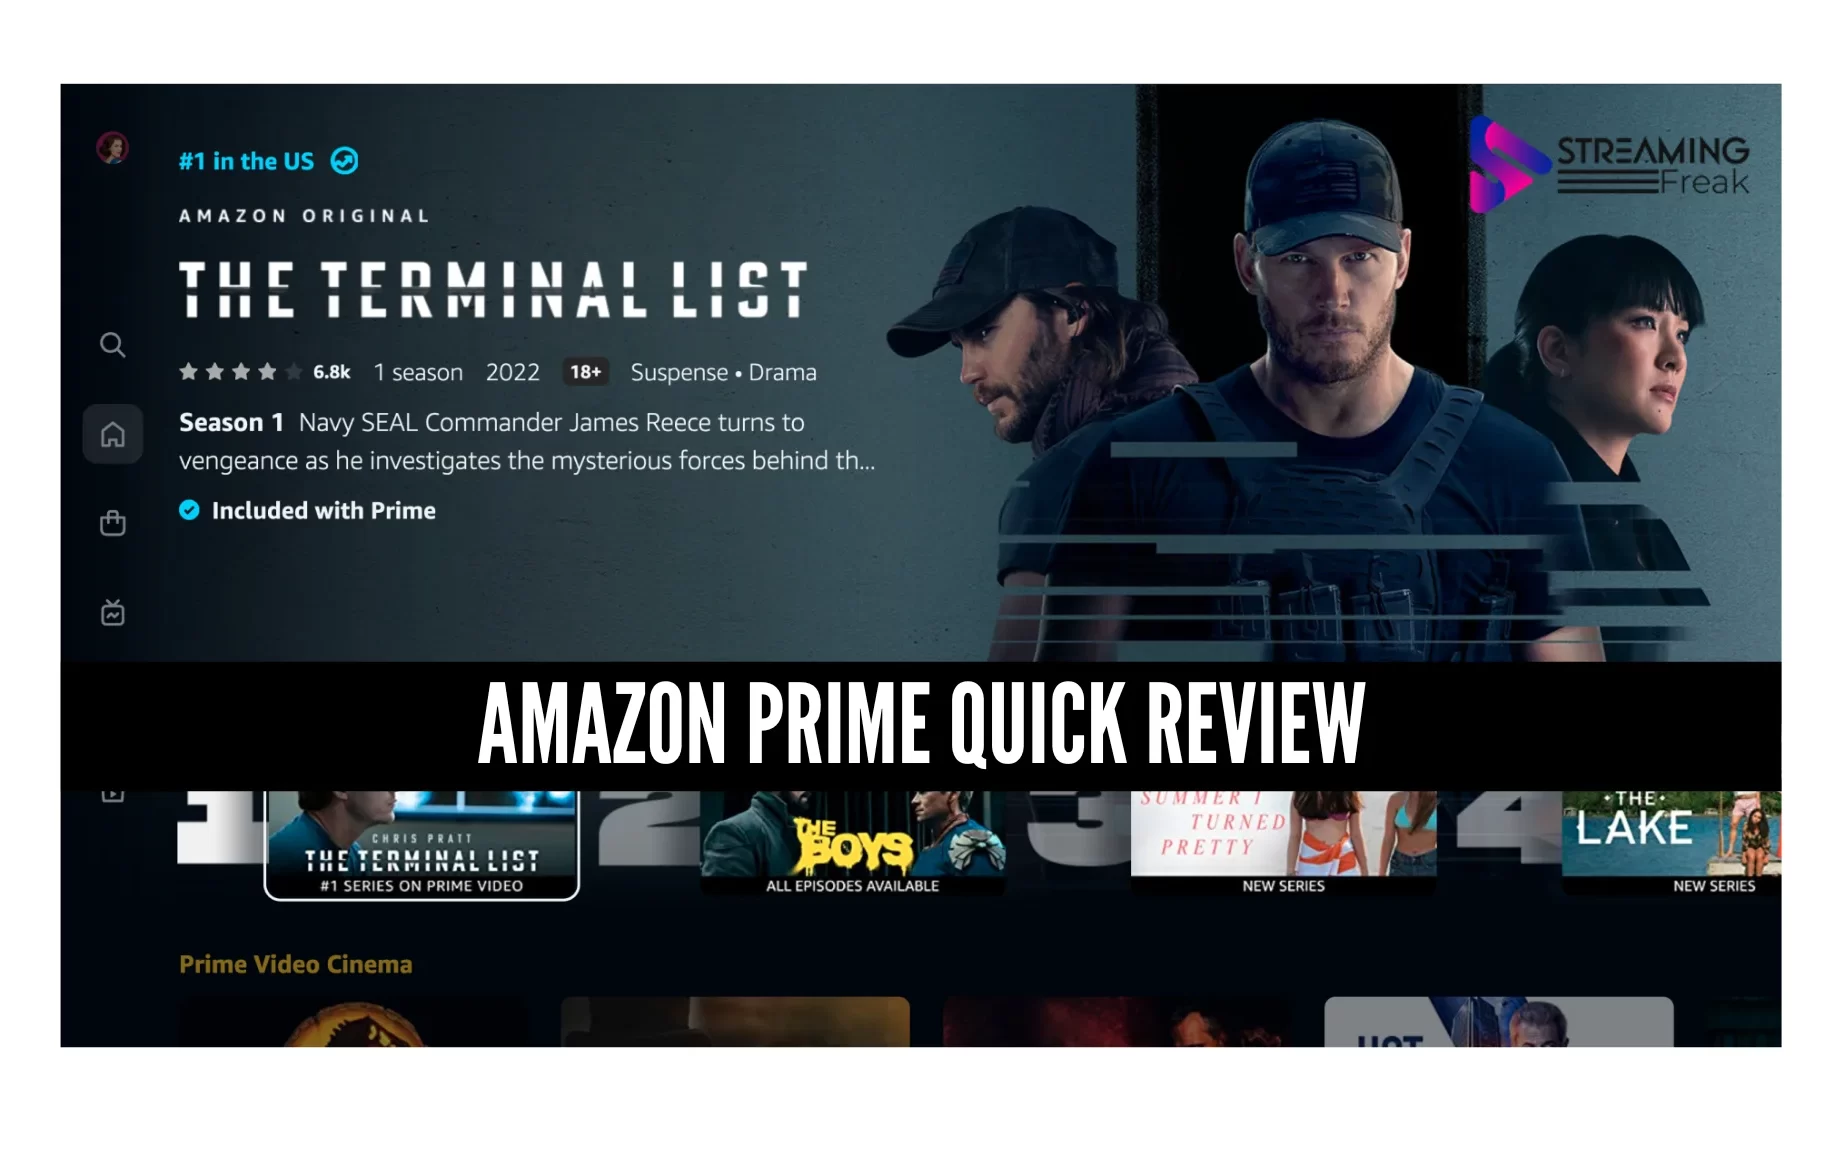 Amazon Prime Quick Review